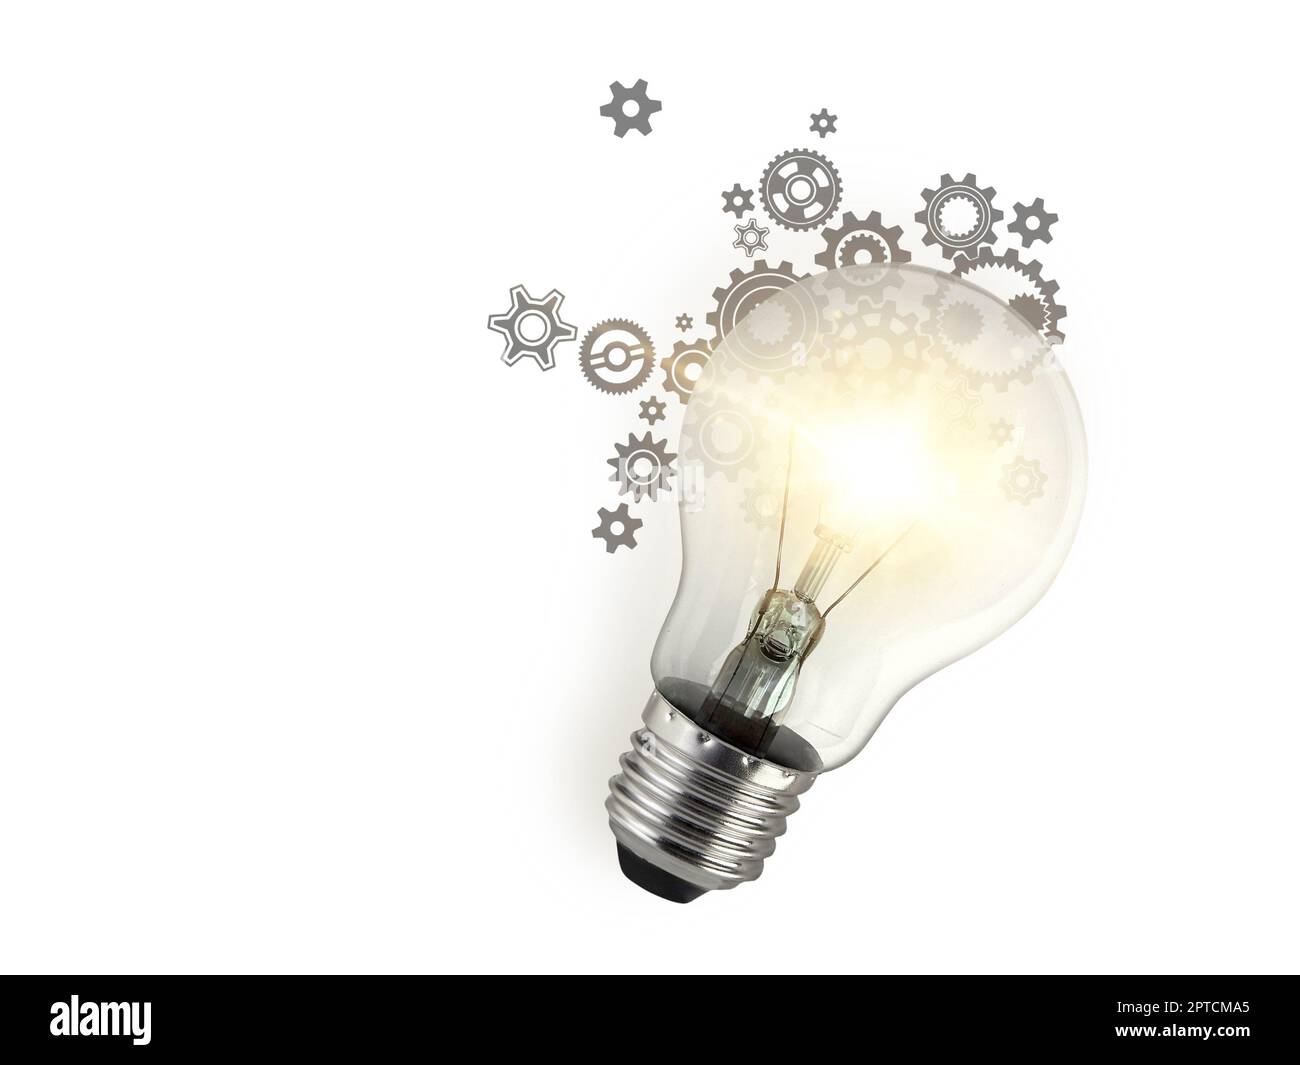 Lampadina in, nuove idee con tecnologia innovativa e creatività. idea  creativa con lampadine scintillanti Foto stock - Alamy